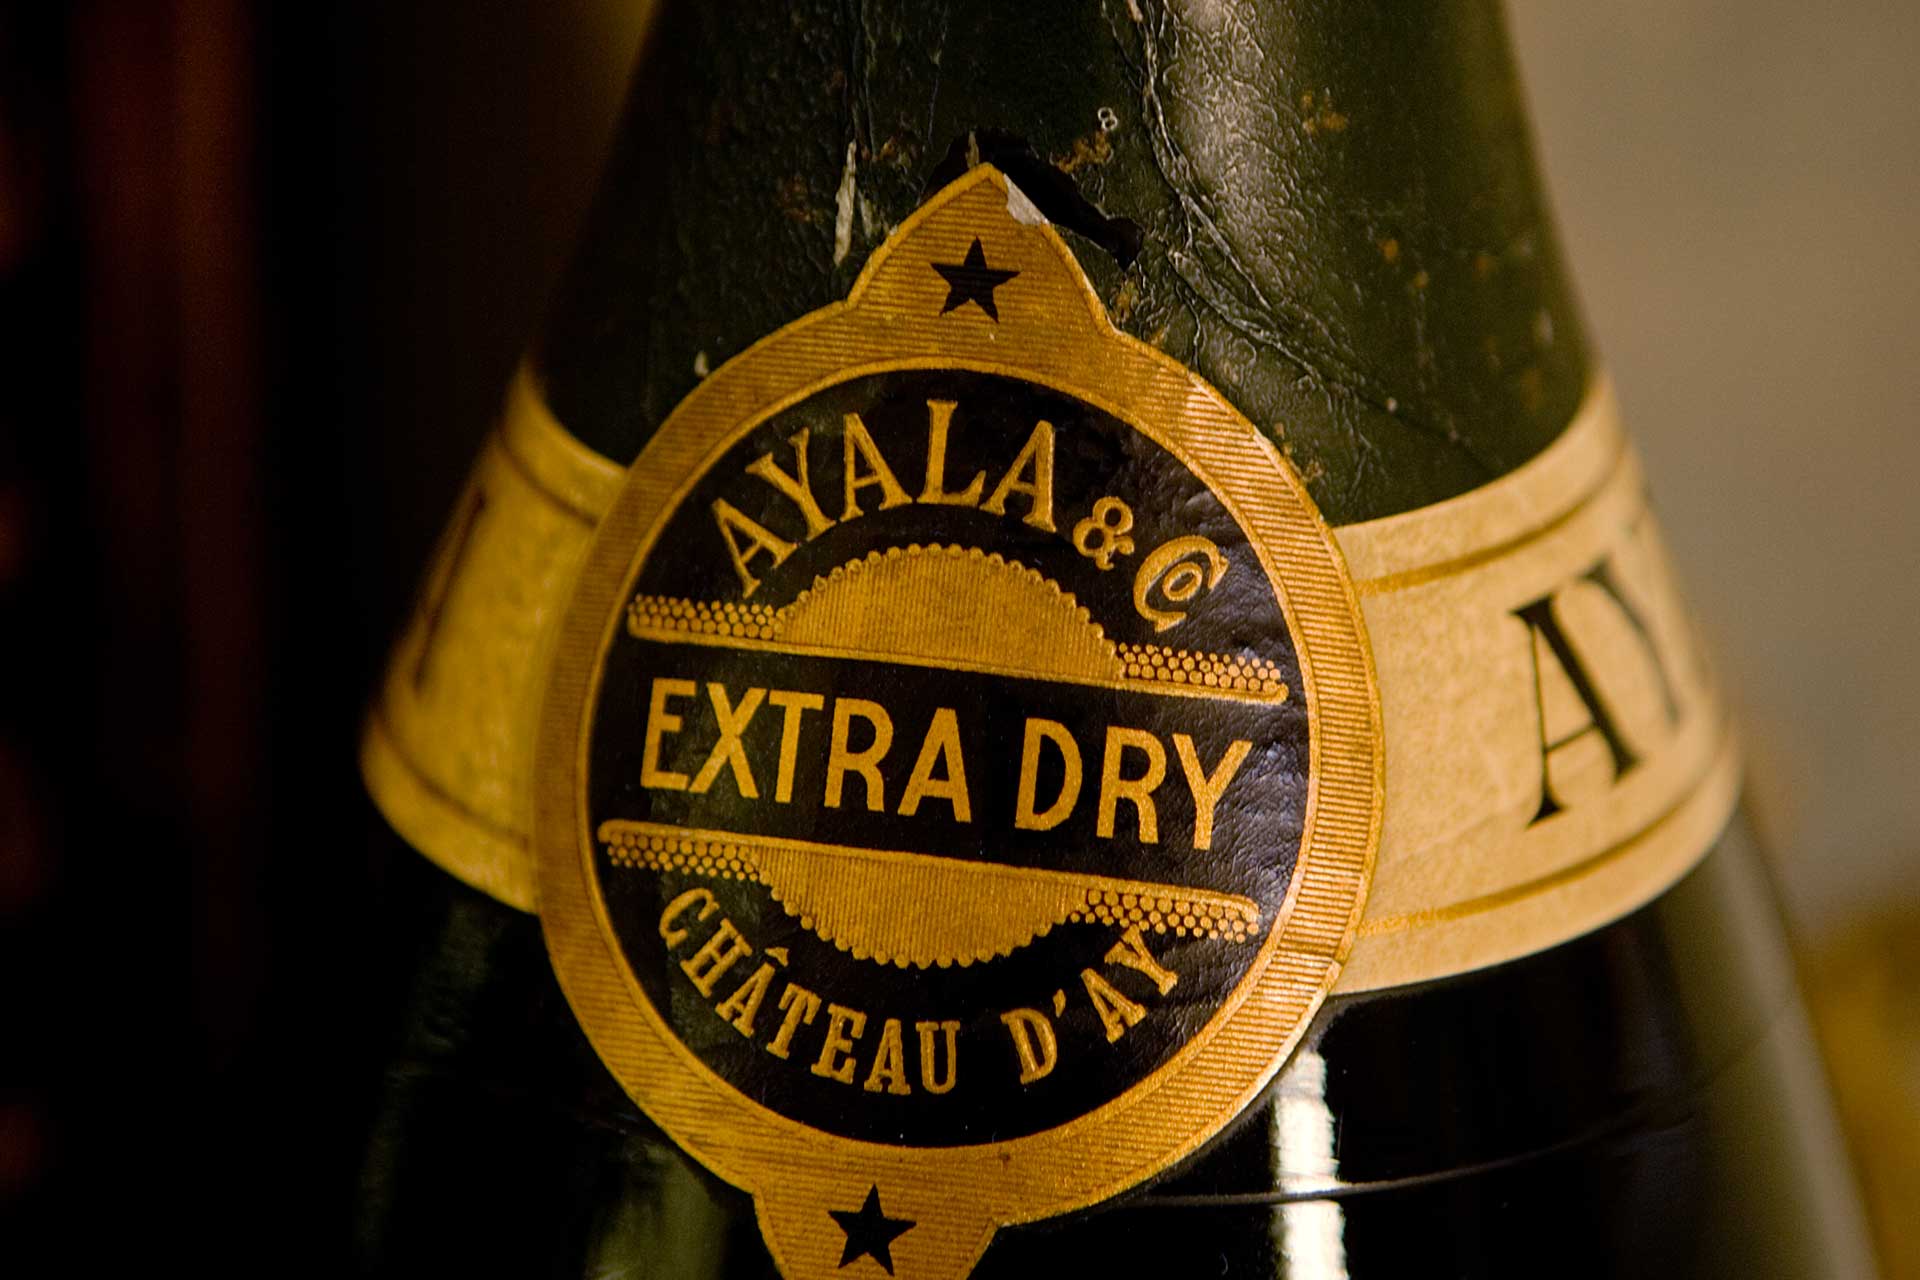 Ayala История шампанского